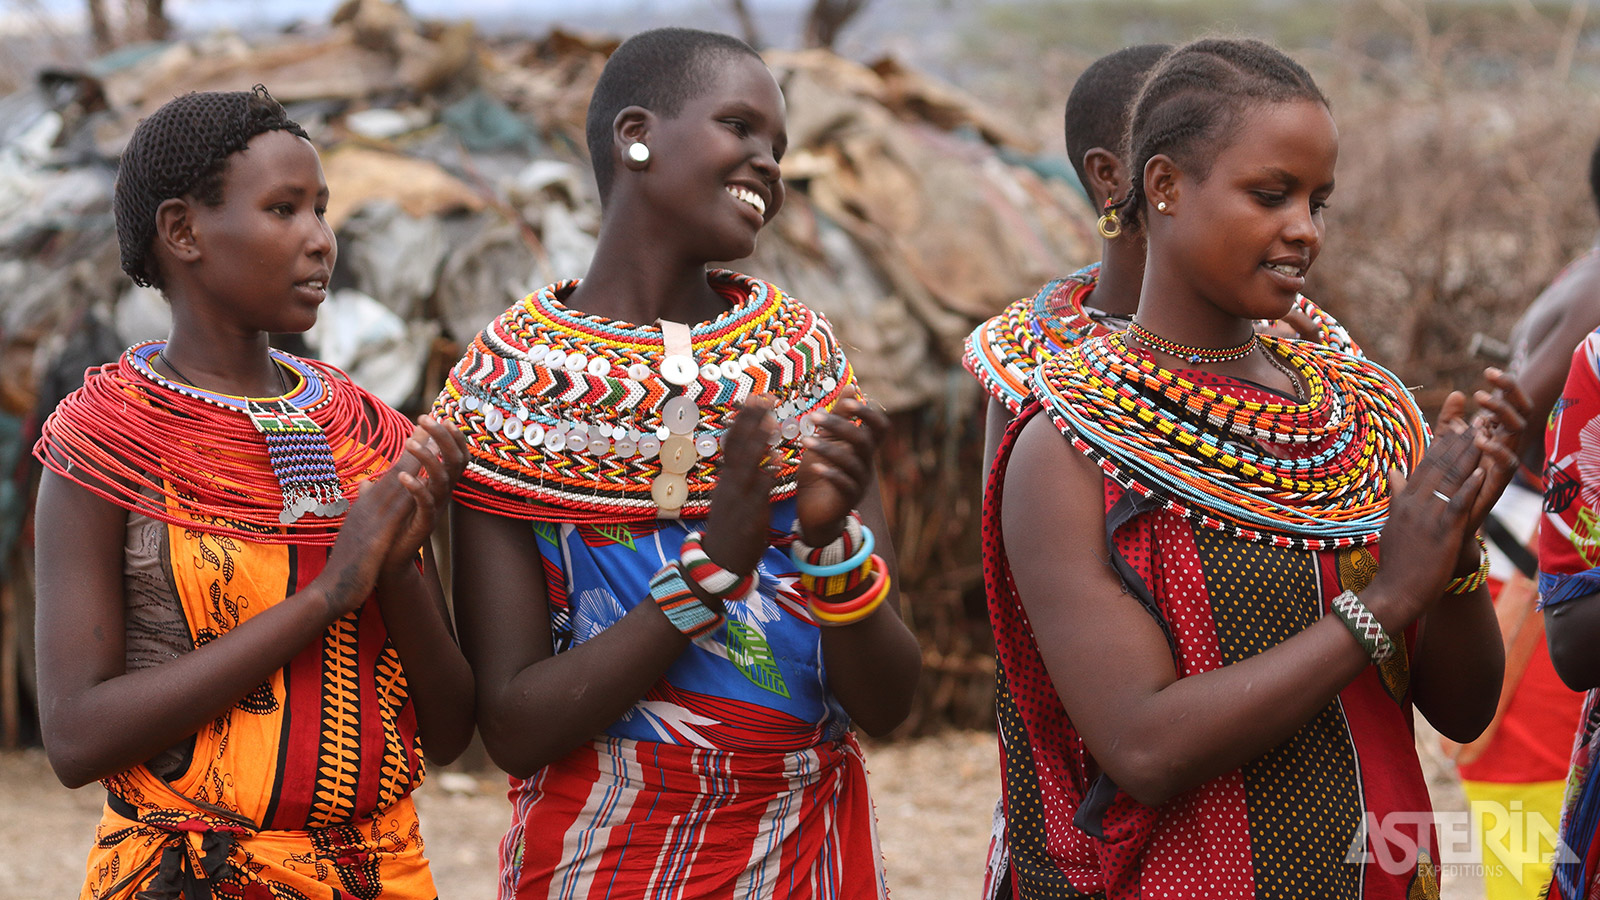 Samburu is eveneens het leefgebied van het gelijknamig nomadenvolk dat in harmonie met de natuur leeft